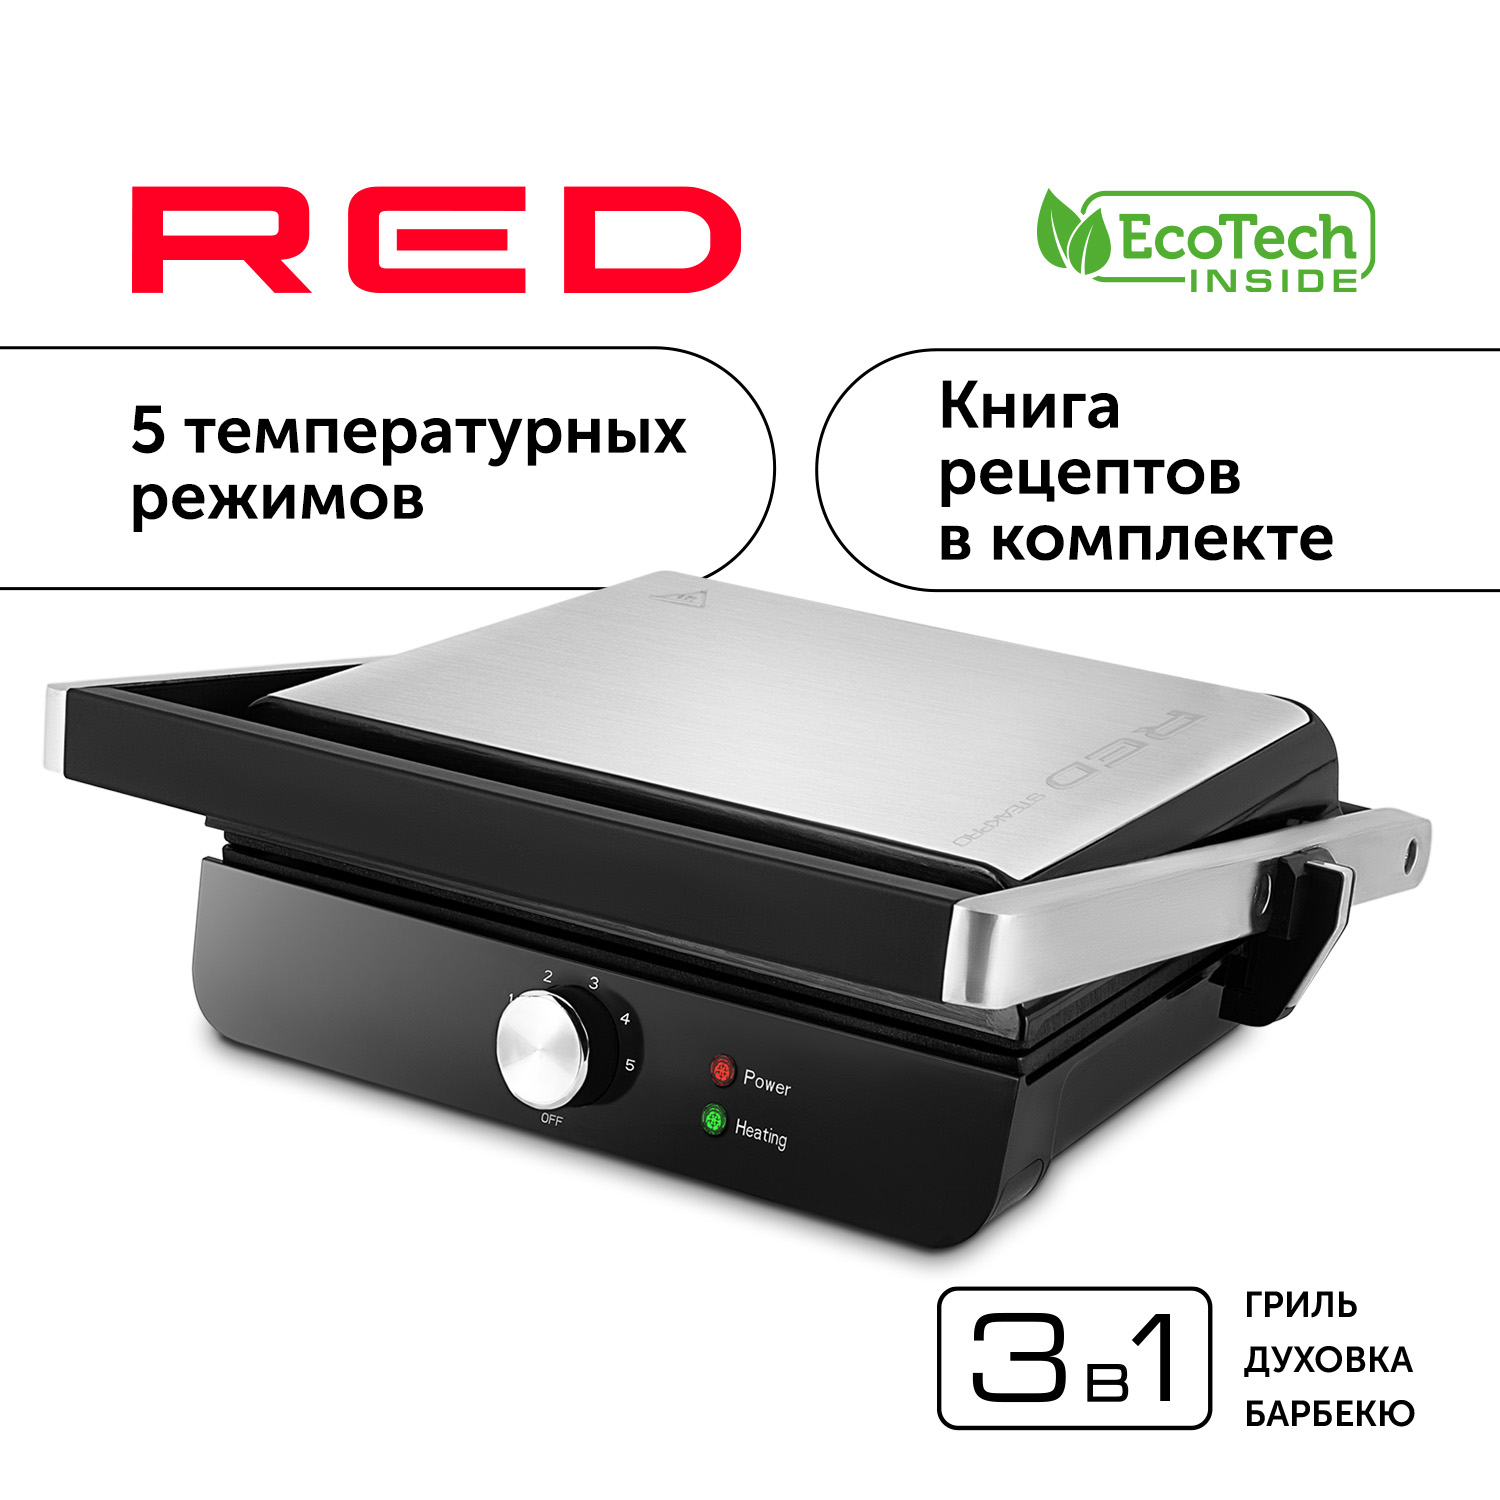 Гриль RED SOLUTION RGM-M815 серебристый, серый, черный гриль red solution rgm m819d серебристый